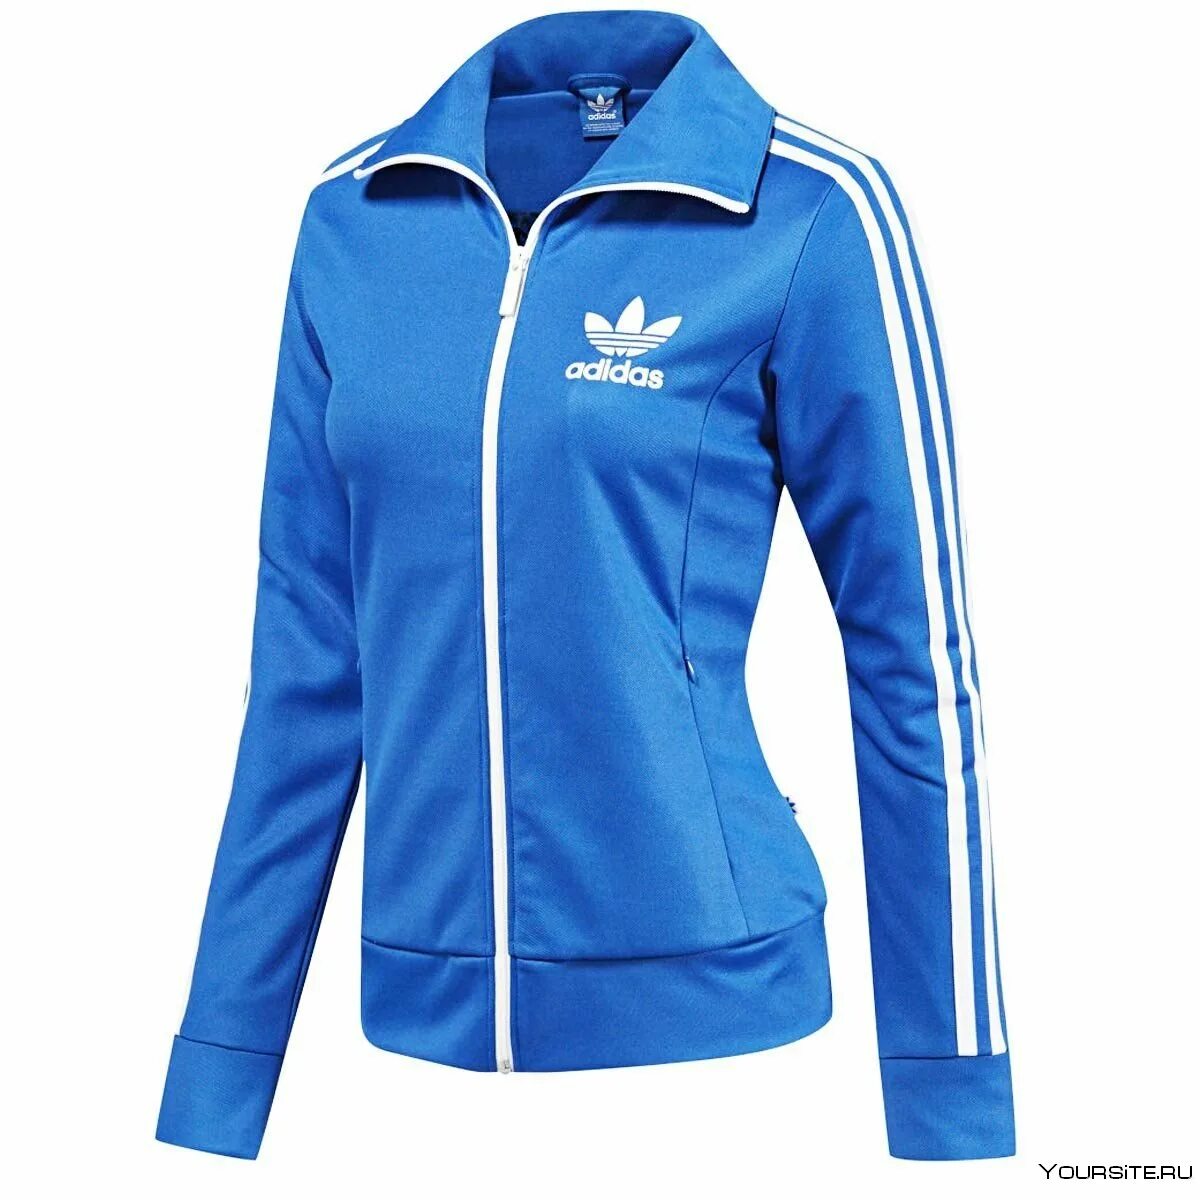 Tracksuit adidas женский. Adidas track Top женская. Adidas clime365 женский костюм. Олимпийка адидас женская синяя. Интернет спортивной женской одежды